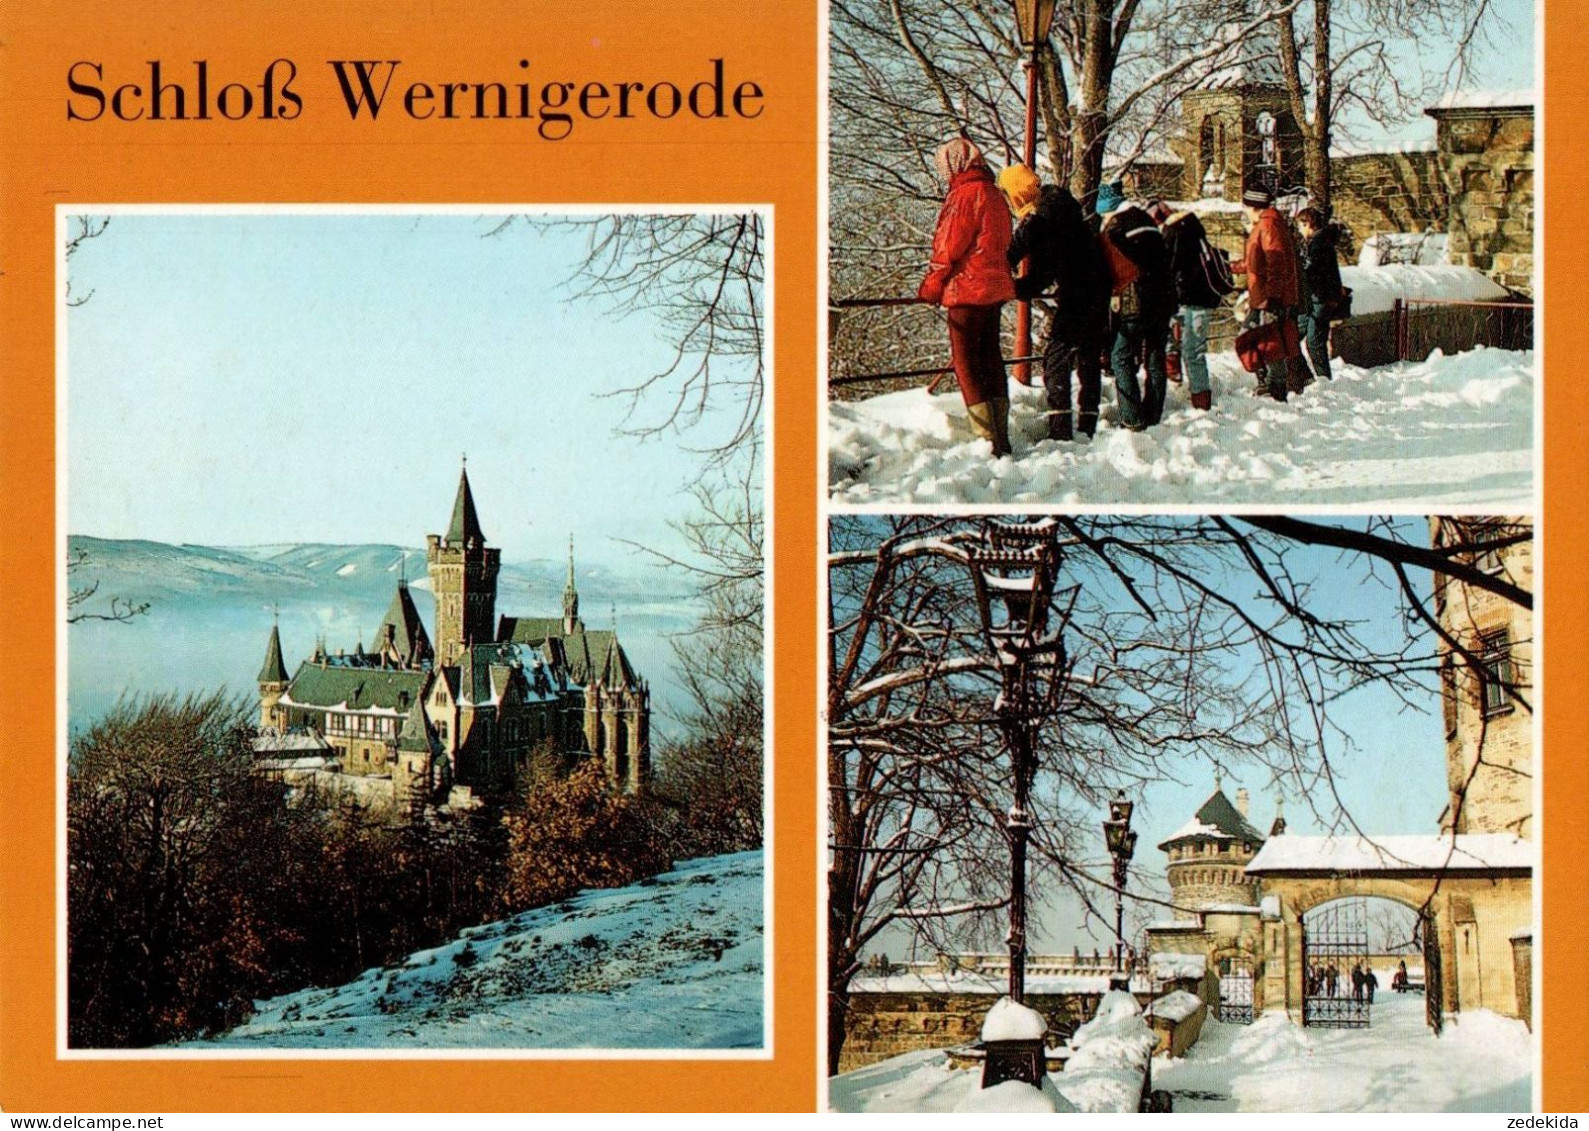 H1139 - TOP Wernigerode Schloß - Bild Und Heimat Reichenbach Qualitätskarte - Wernigerode